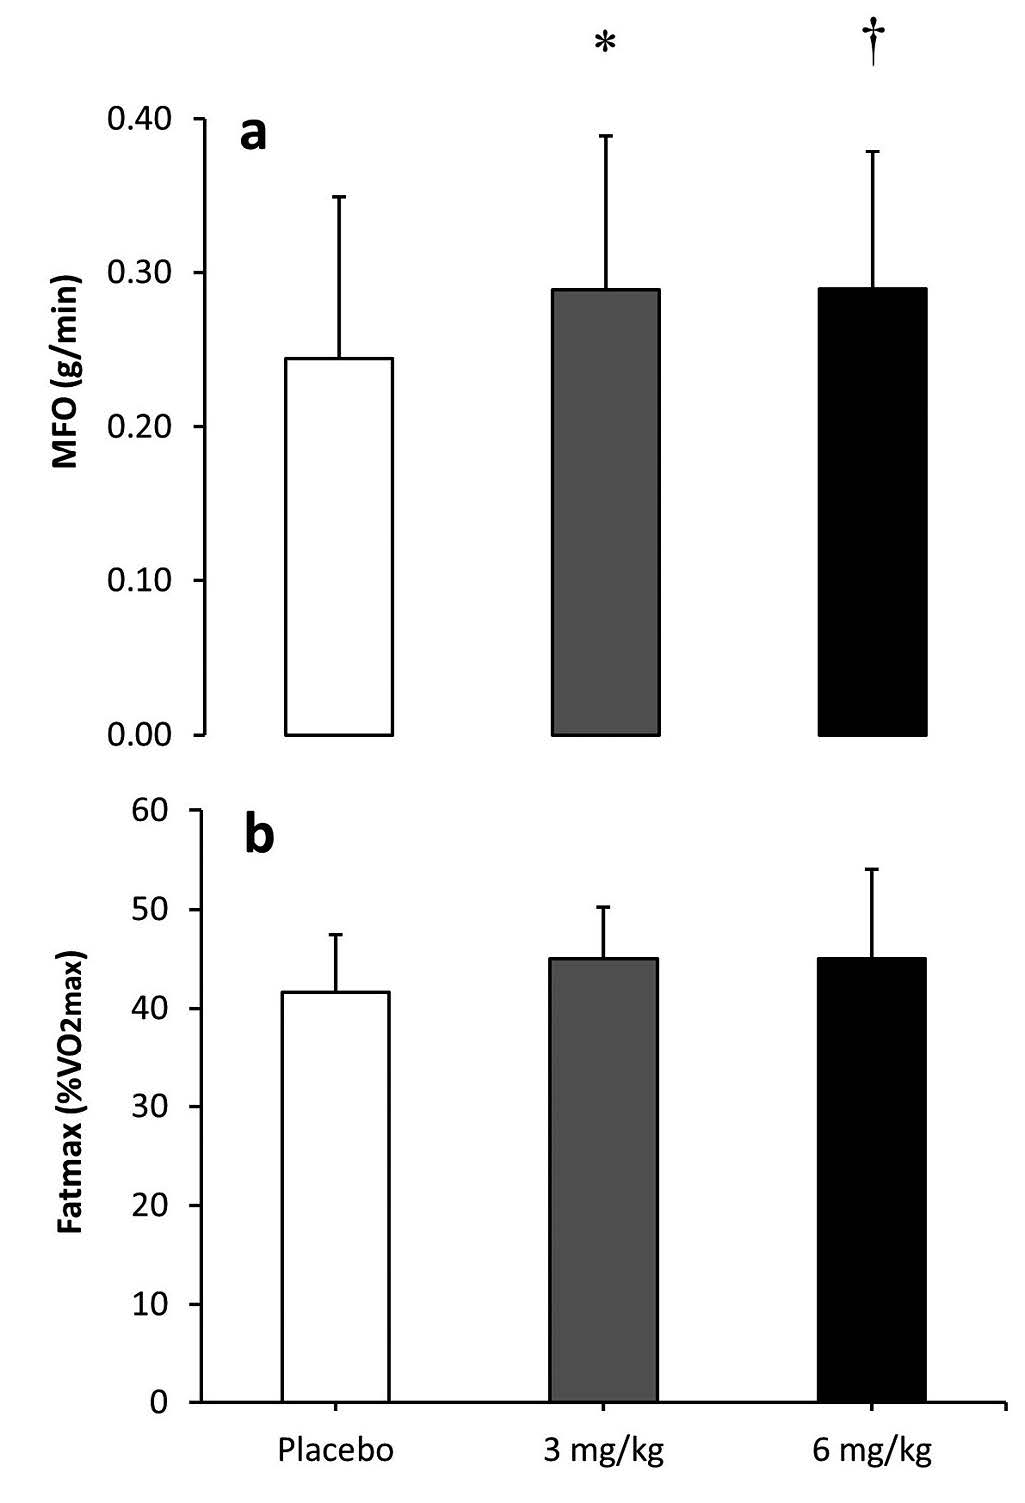 Máxima Oxidación de grasas y fatmax en mujeres tras la ingesta de 3 y 6 mg por kg de peso de cafeína o un placebo